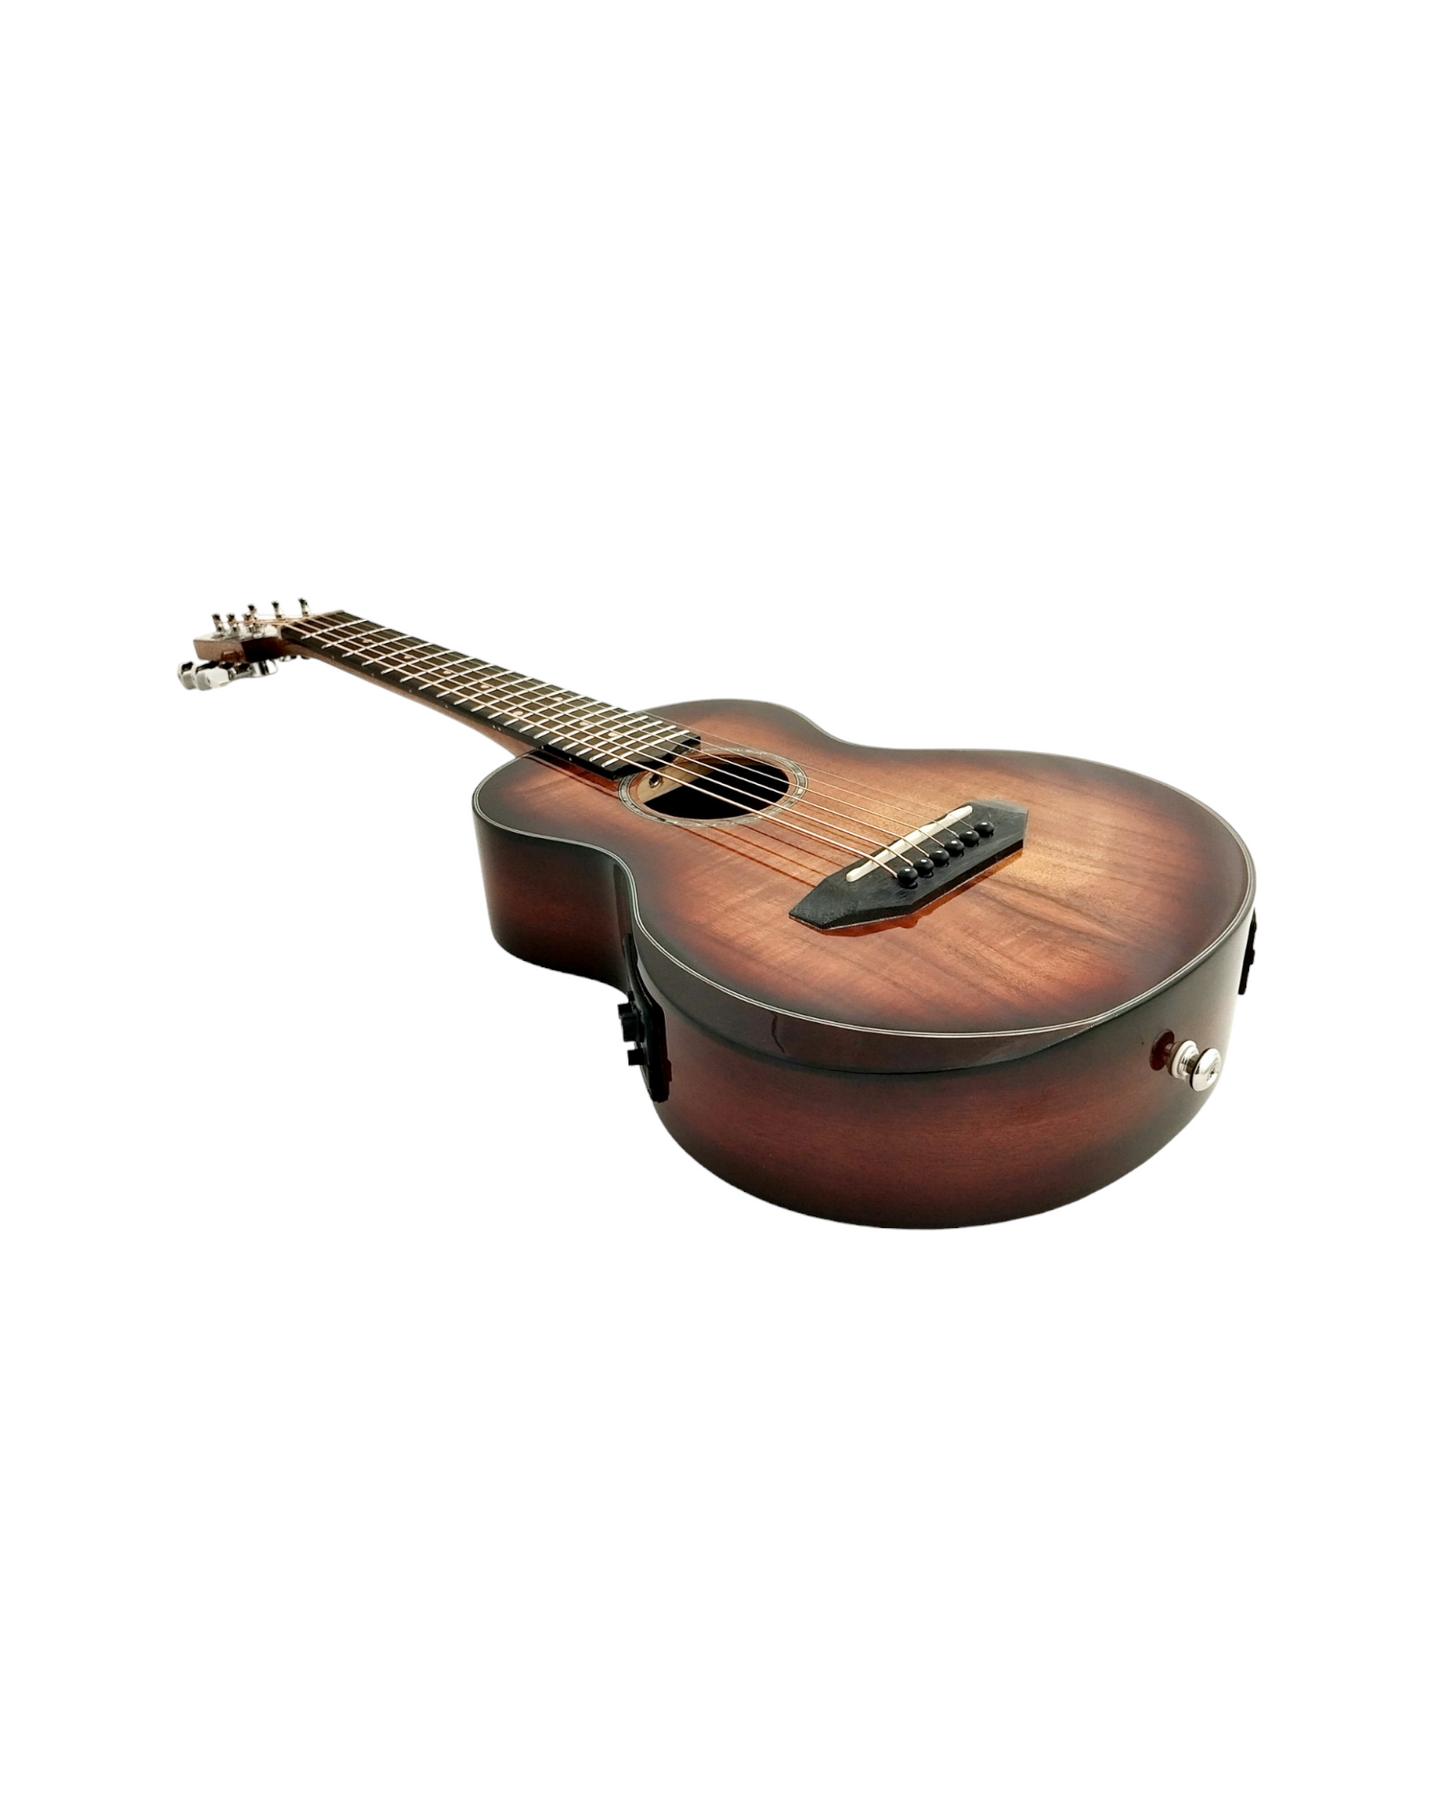 6-String Guitarlele with Armrest UK266KOA